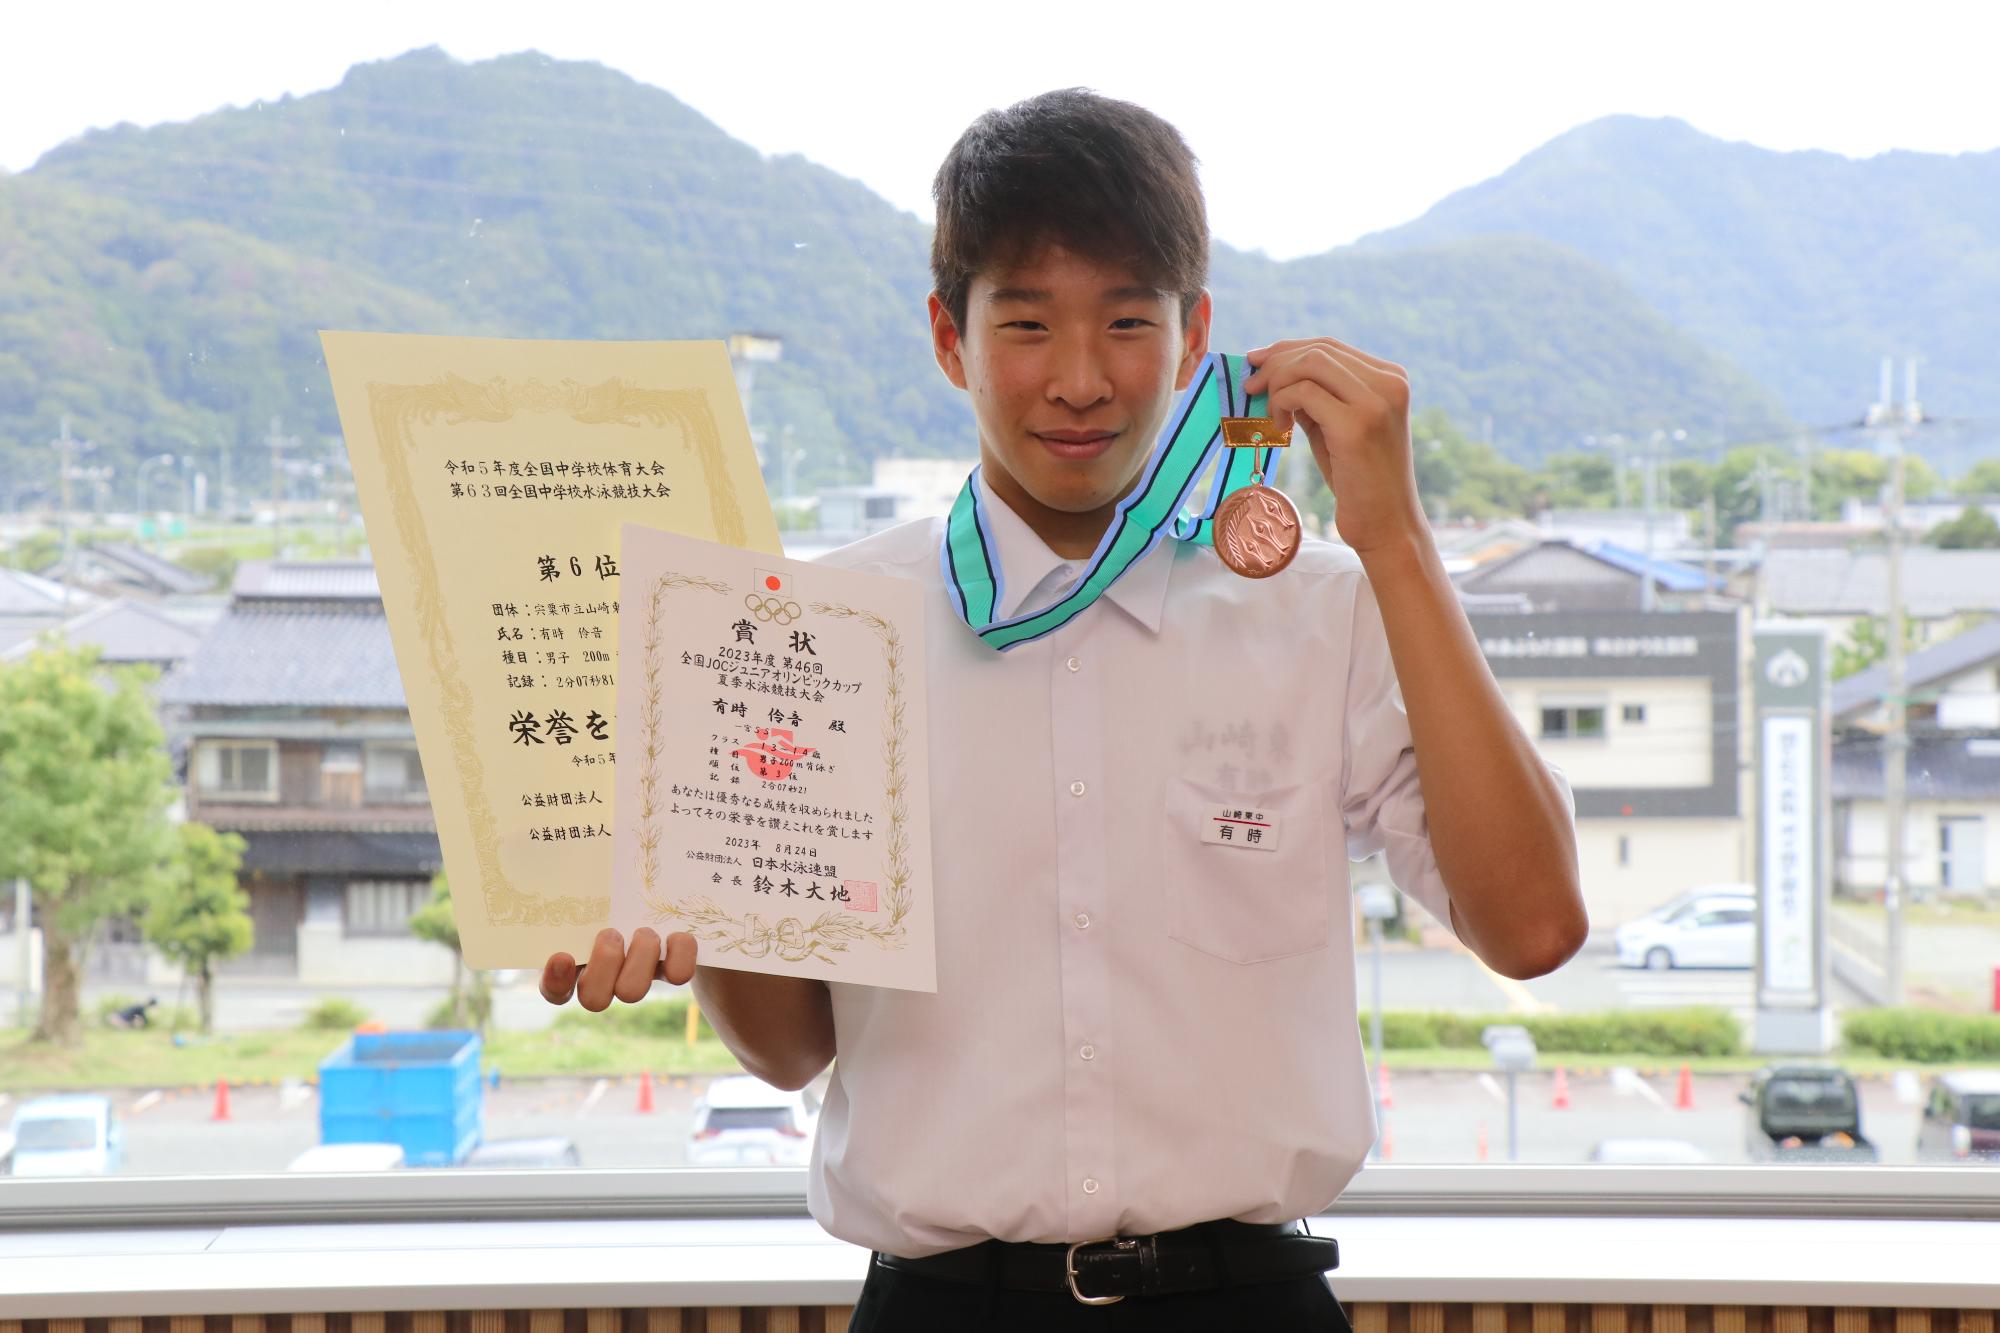 山崎東中学校2年の有時伶音さんが宍粟市役所でメダルを首にかけ、賞状2枚を手に笑顔を見せている写真